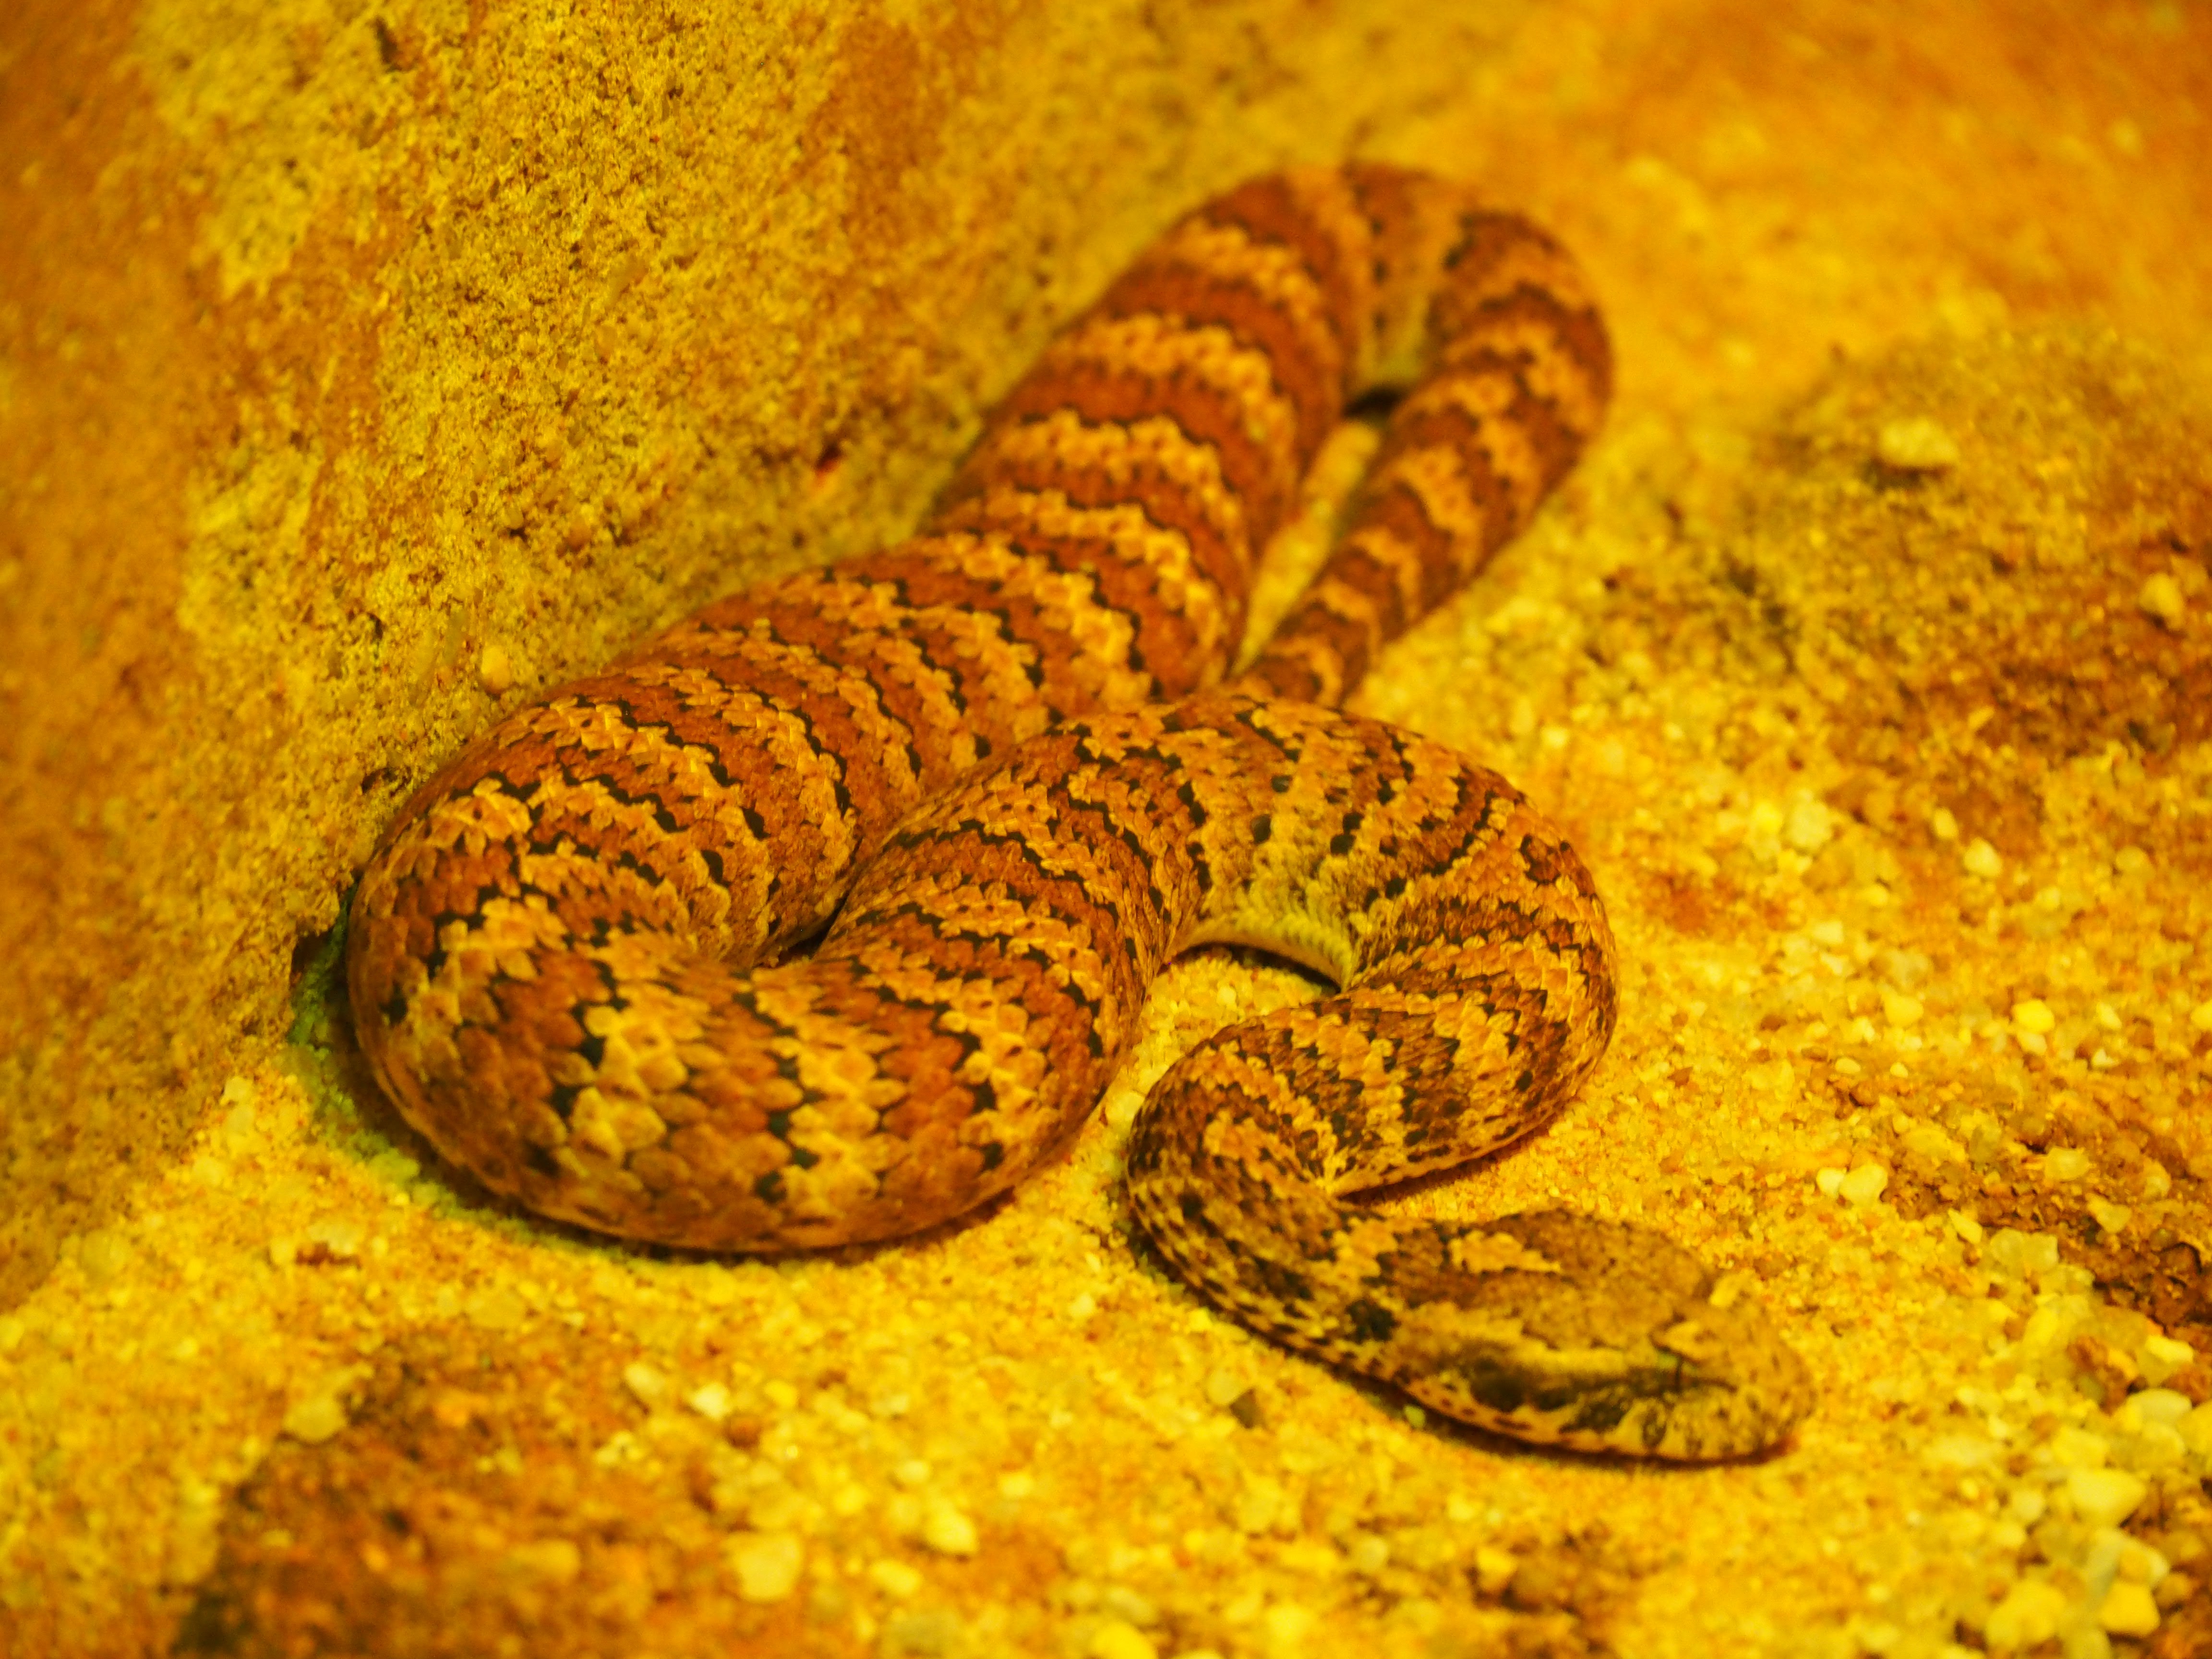 australian desert snakes